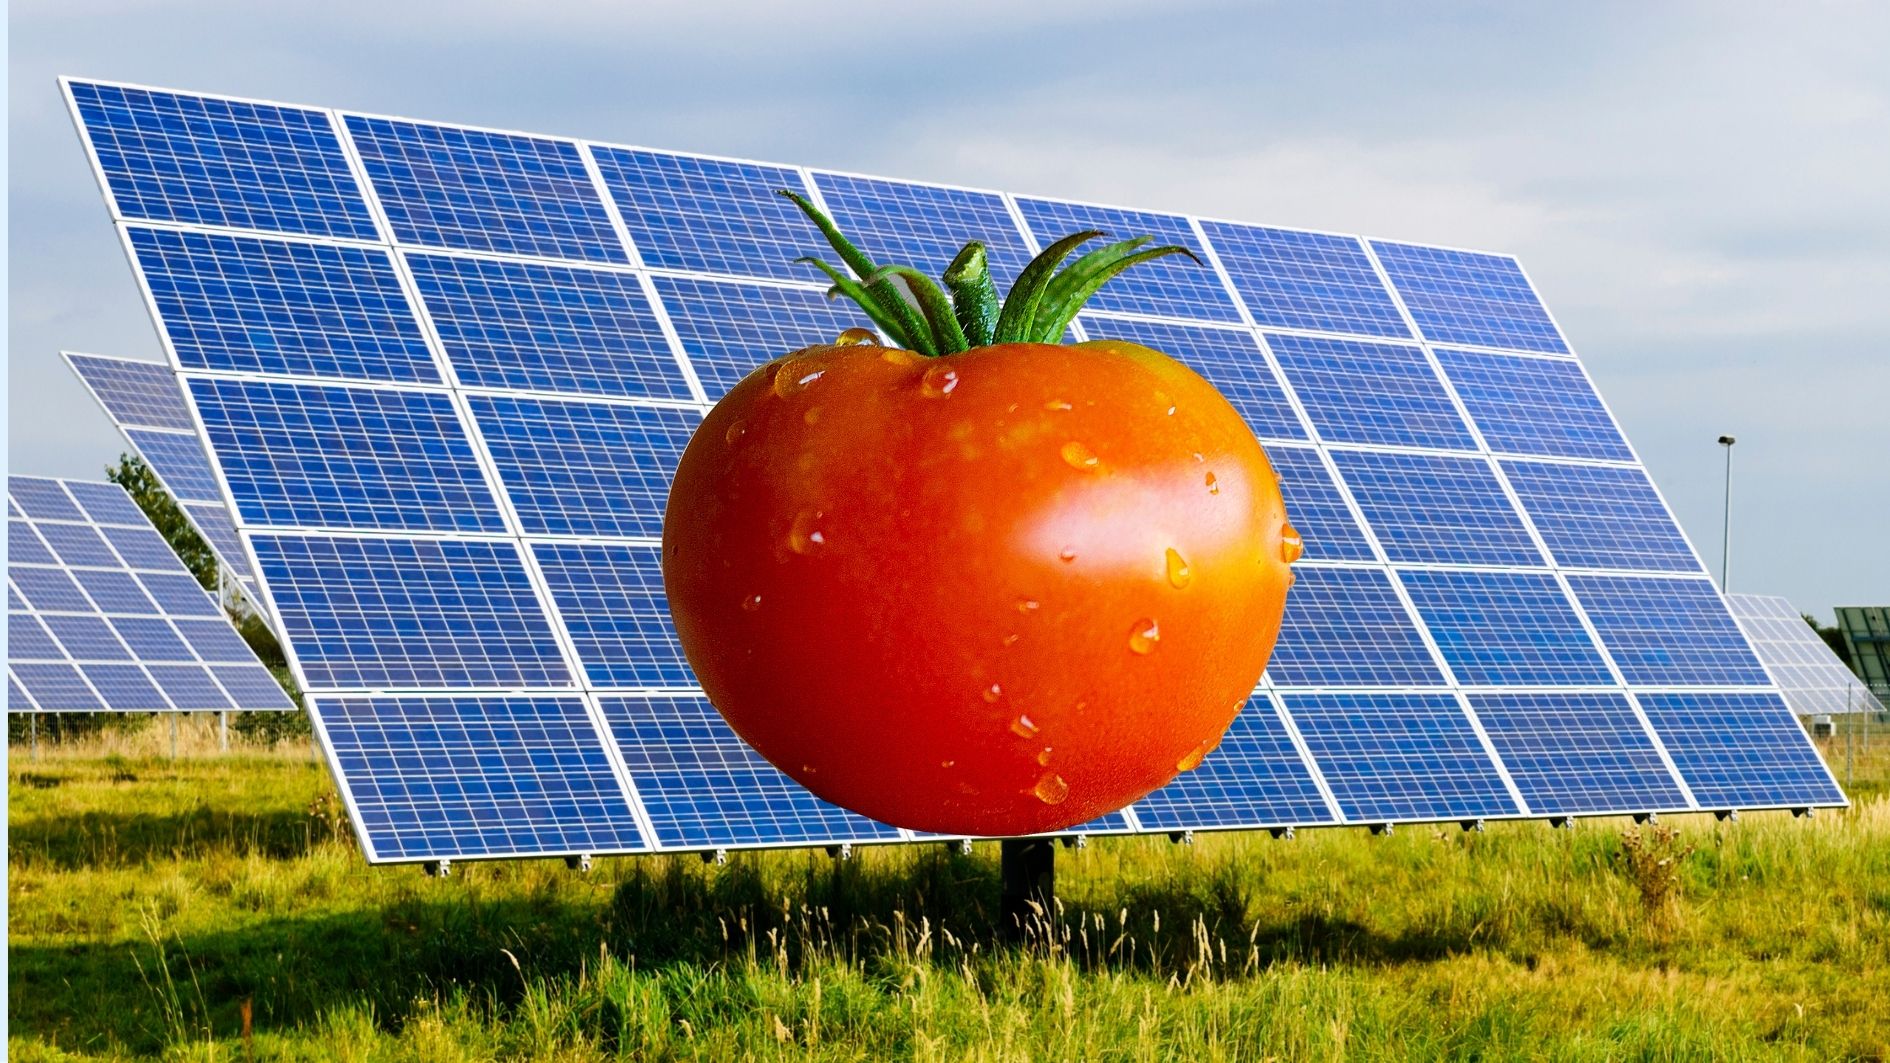 トマトのリコピンを太陽電池に練り込むと発電効率が上がると判明の画像 2/3